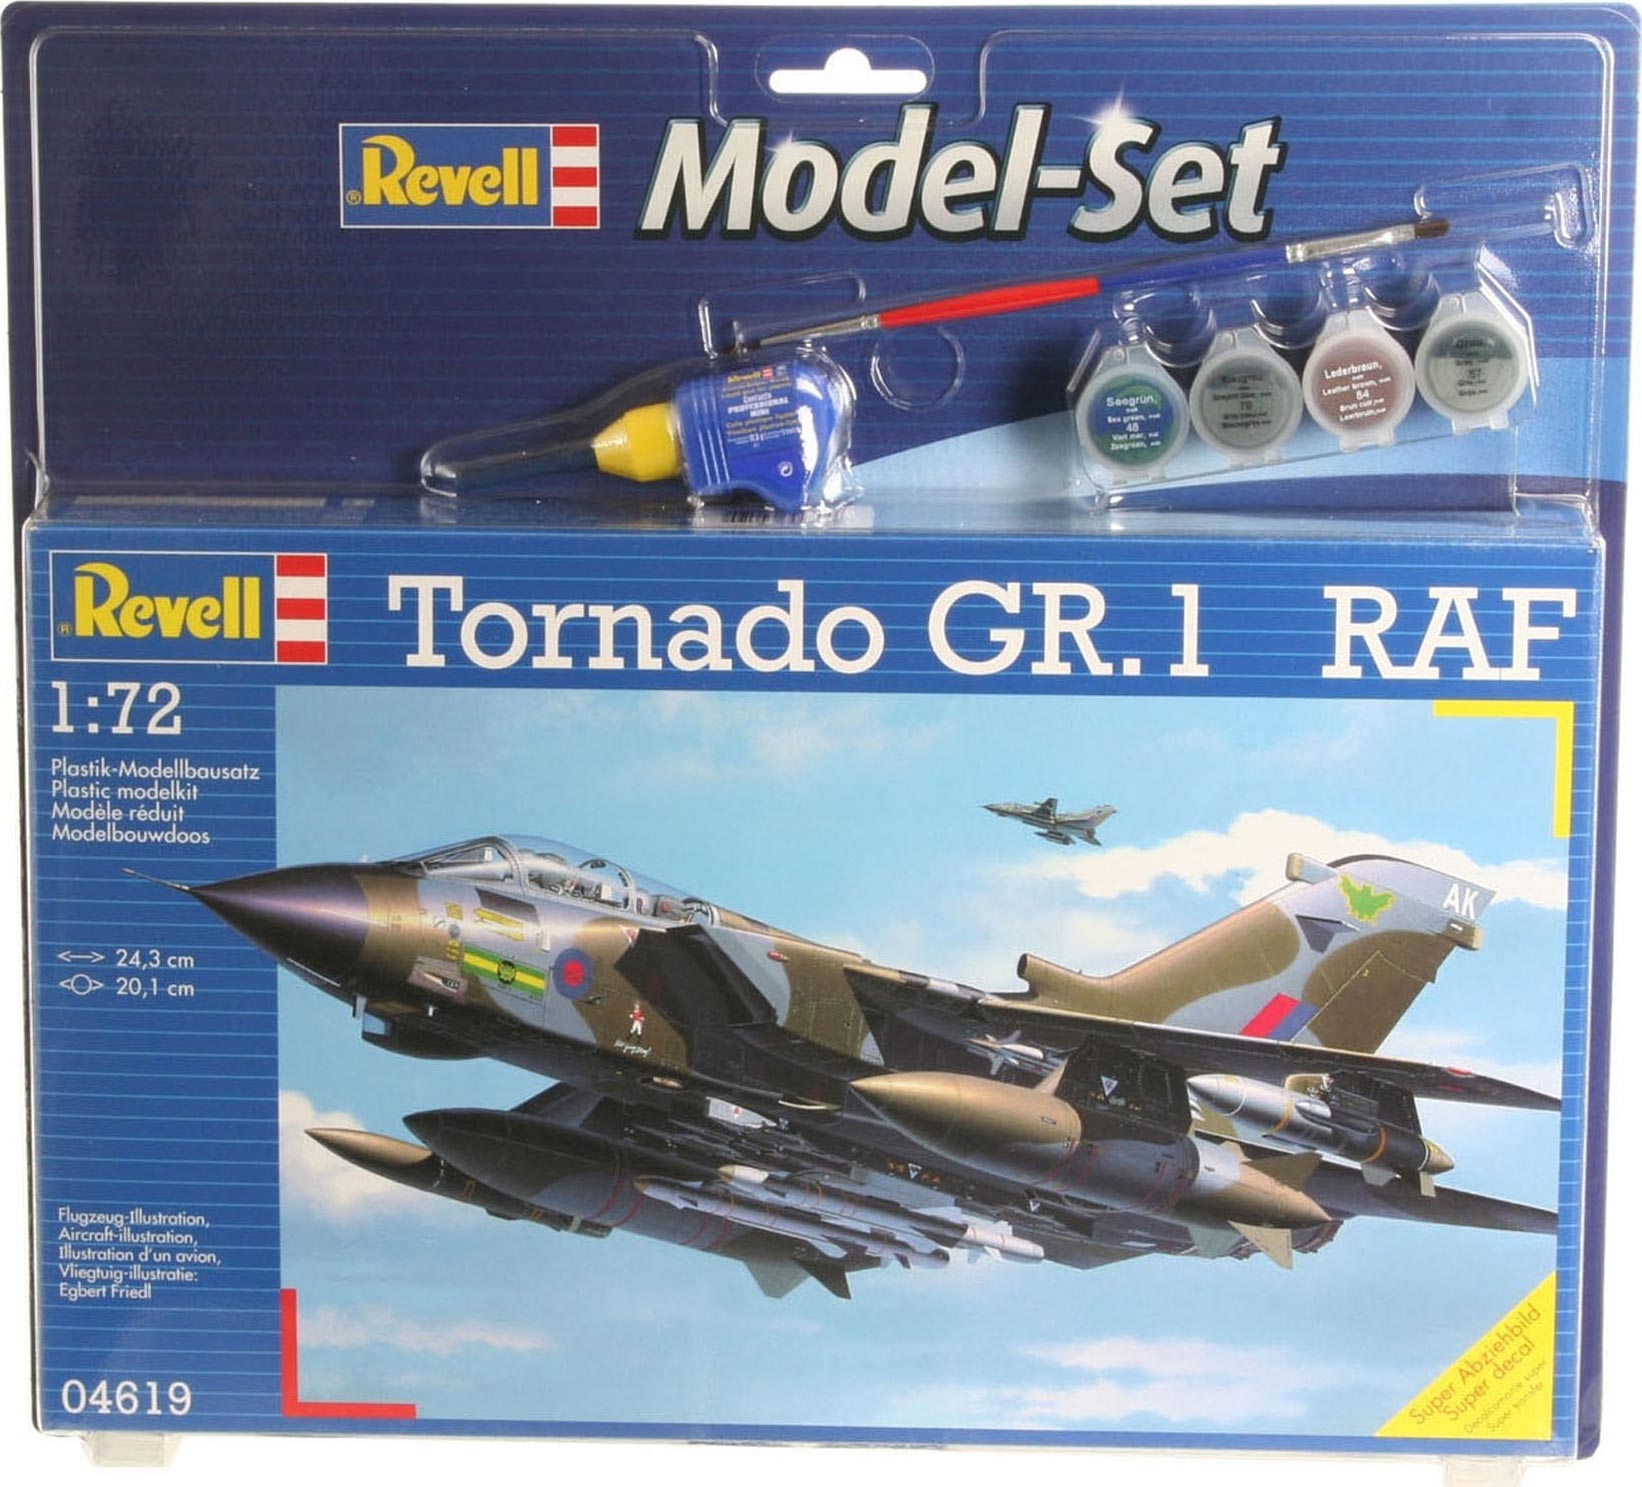 Revell - BAe Harrier GR.7 (1:144) - 63887 - MJ Modelkits.com